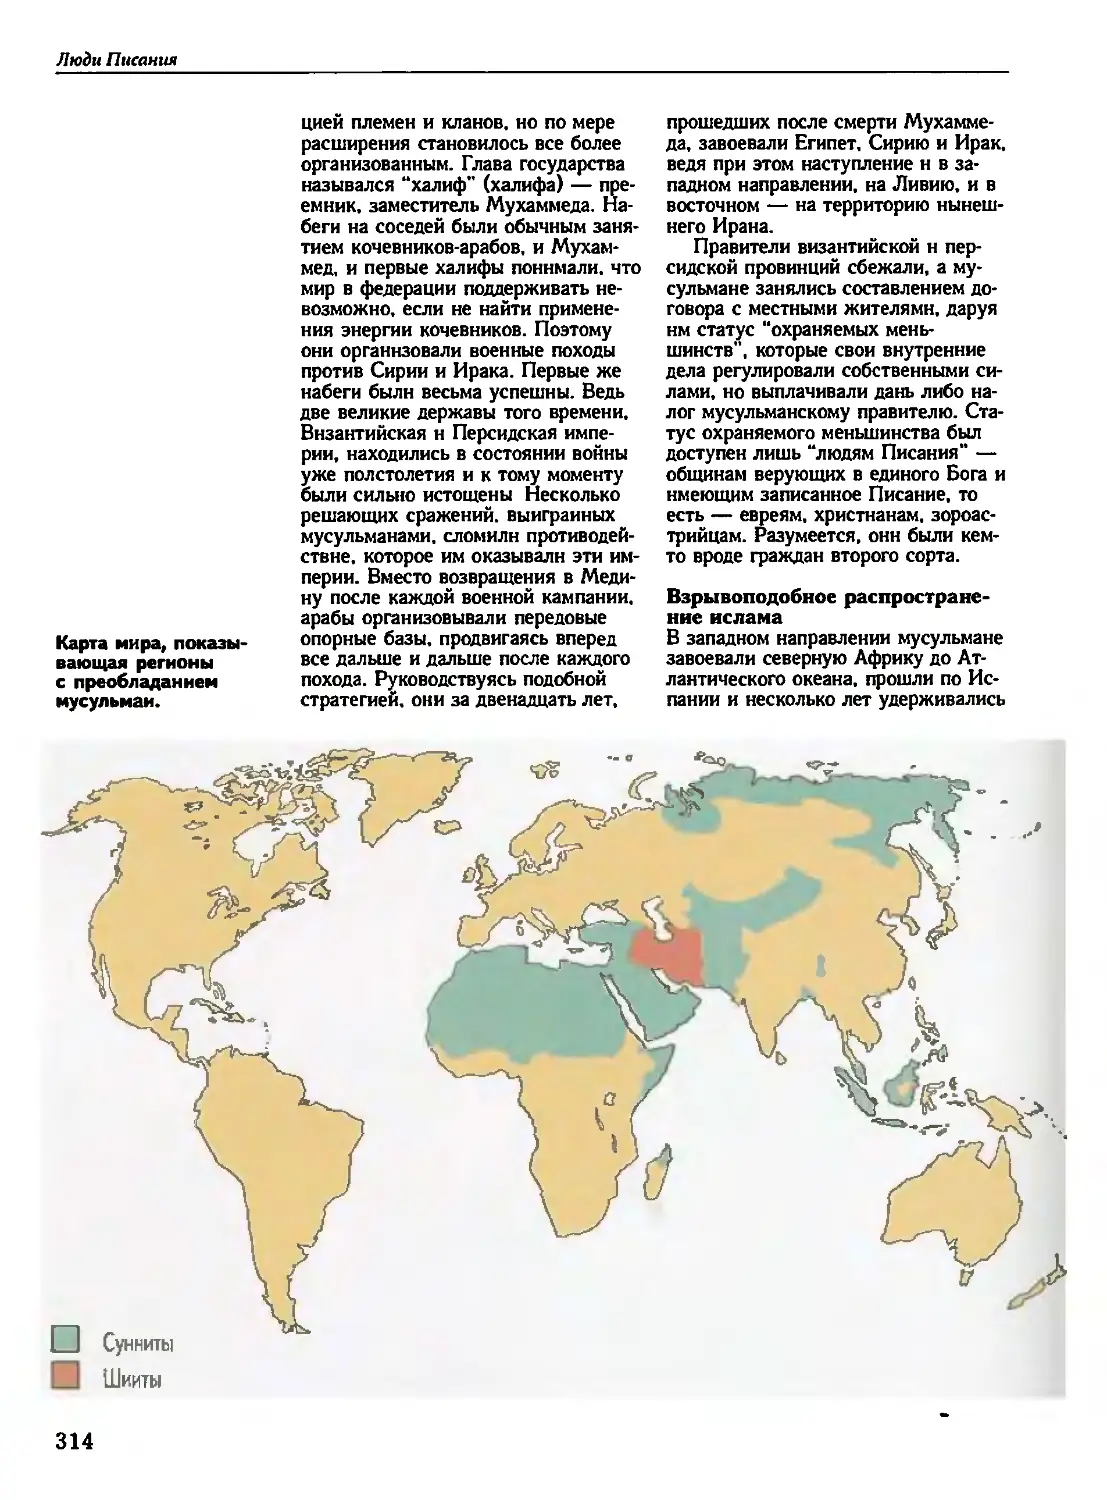 Карта: мусульманский мир